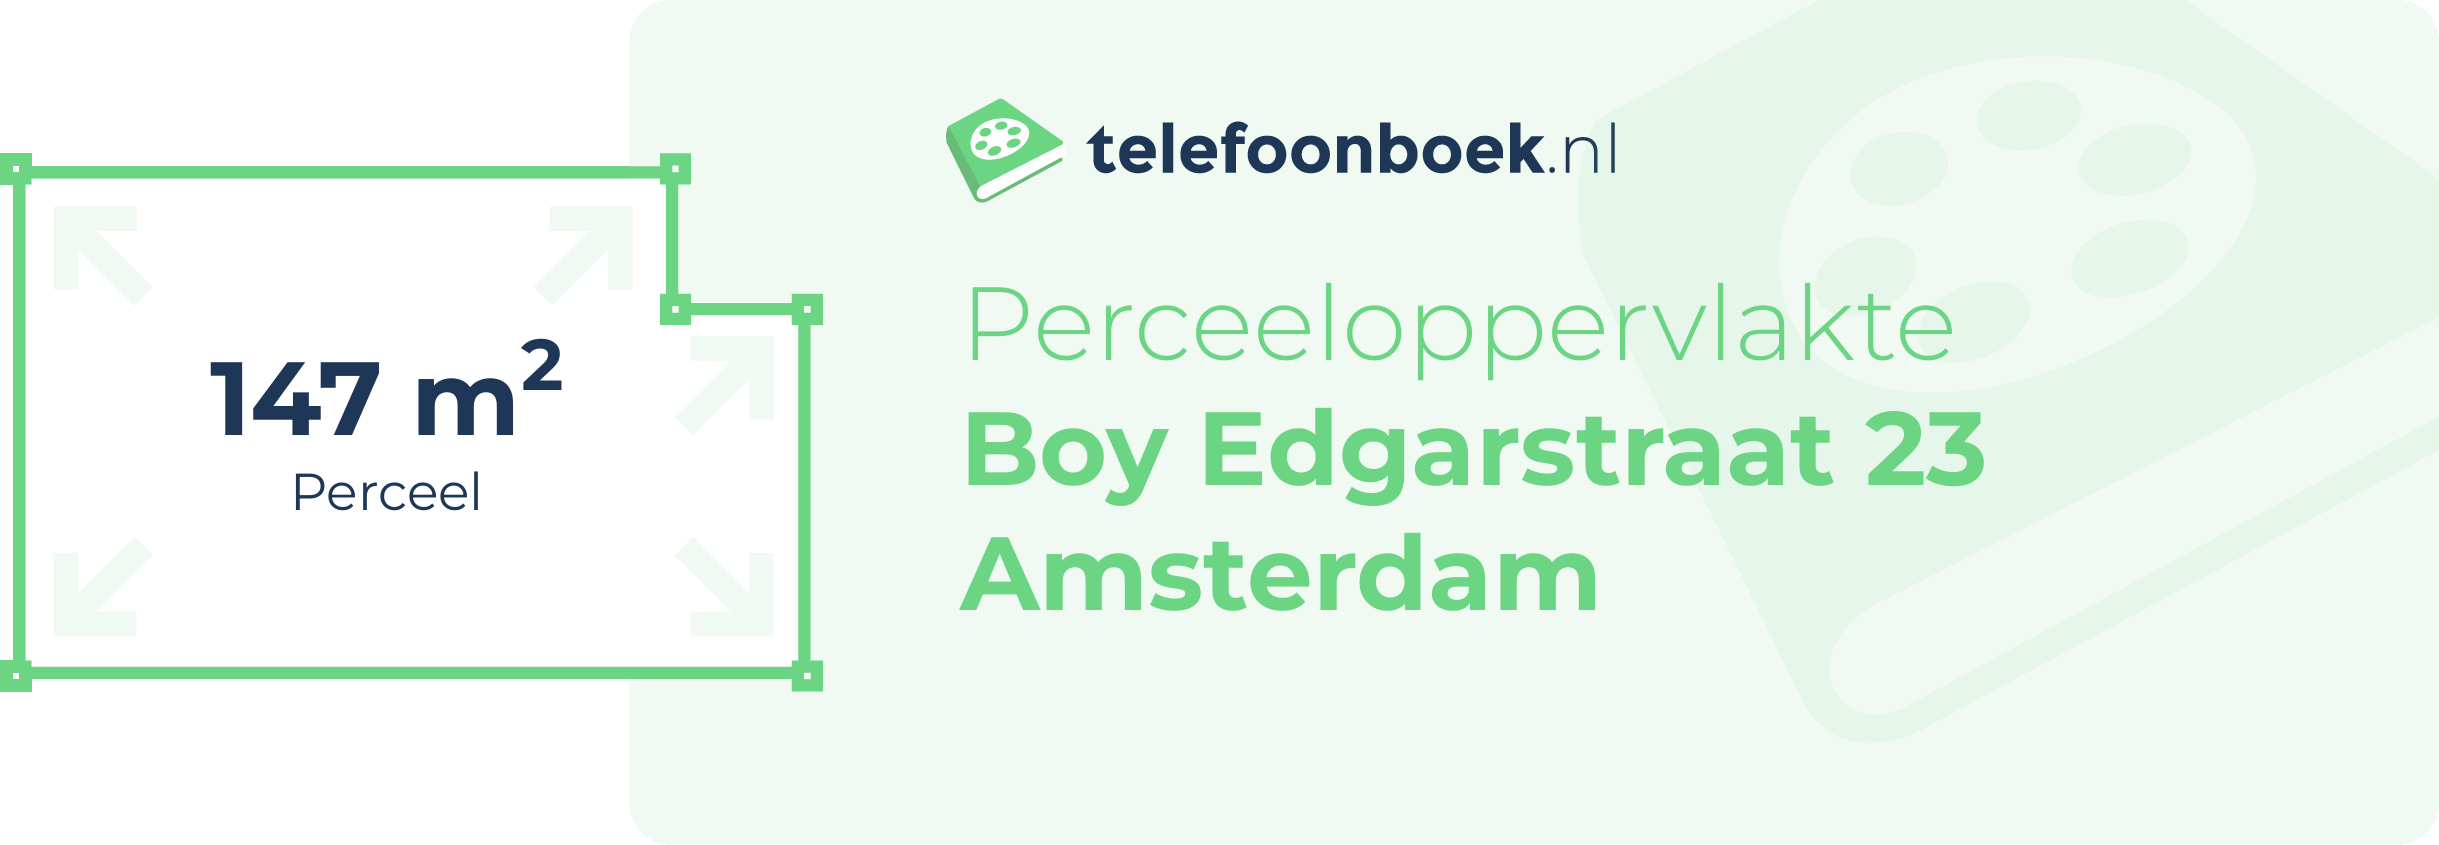 Perceeloppervlakte Boy Edgarstraat 23 Amsterdam